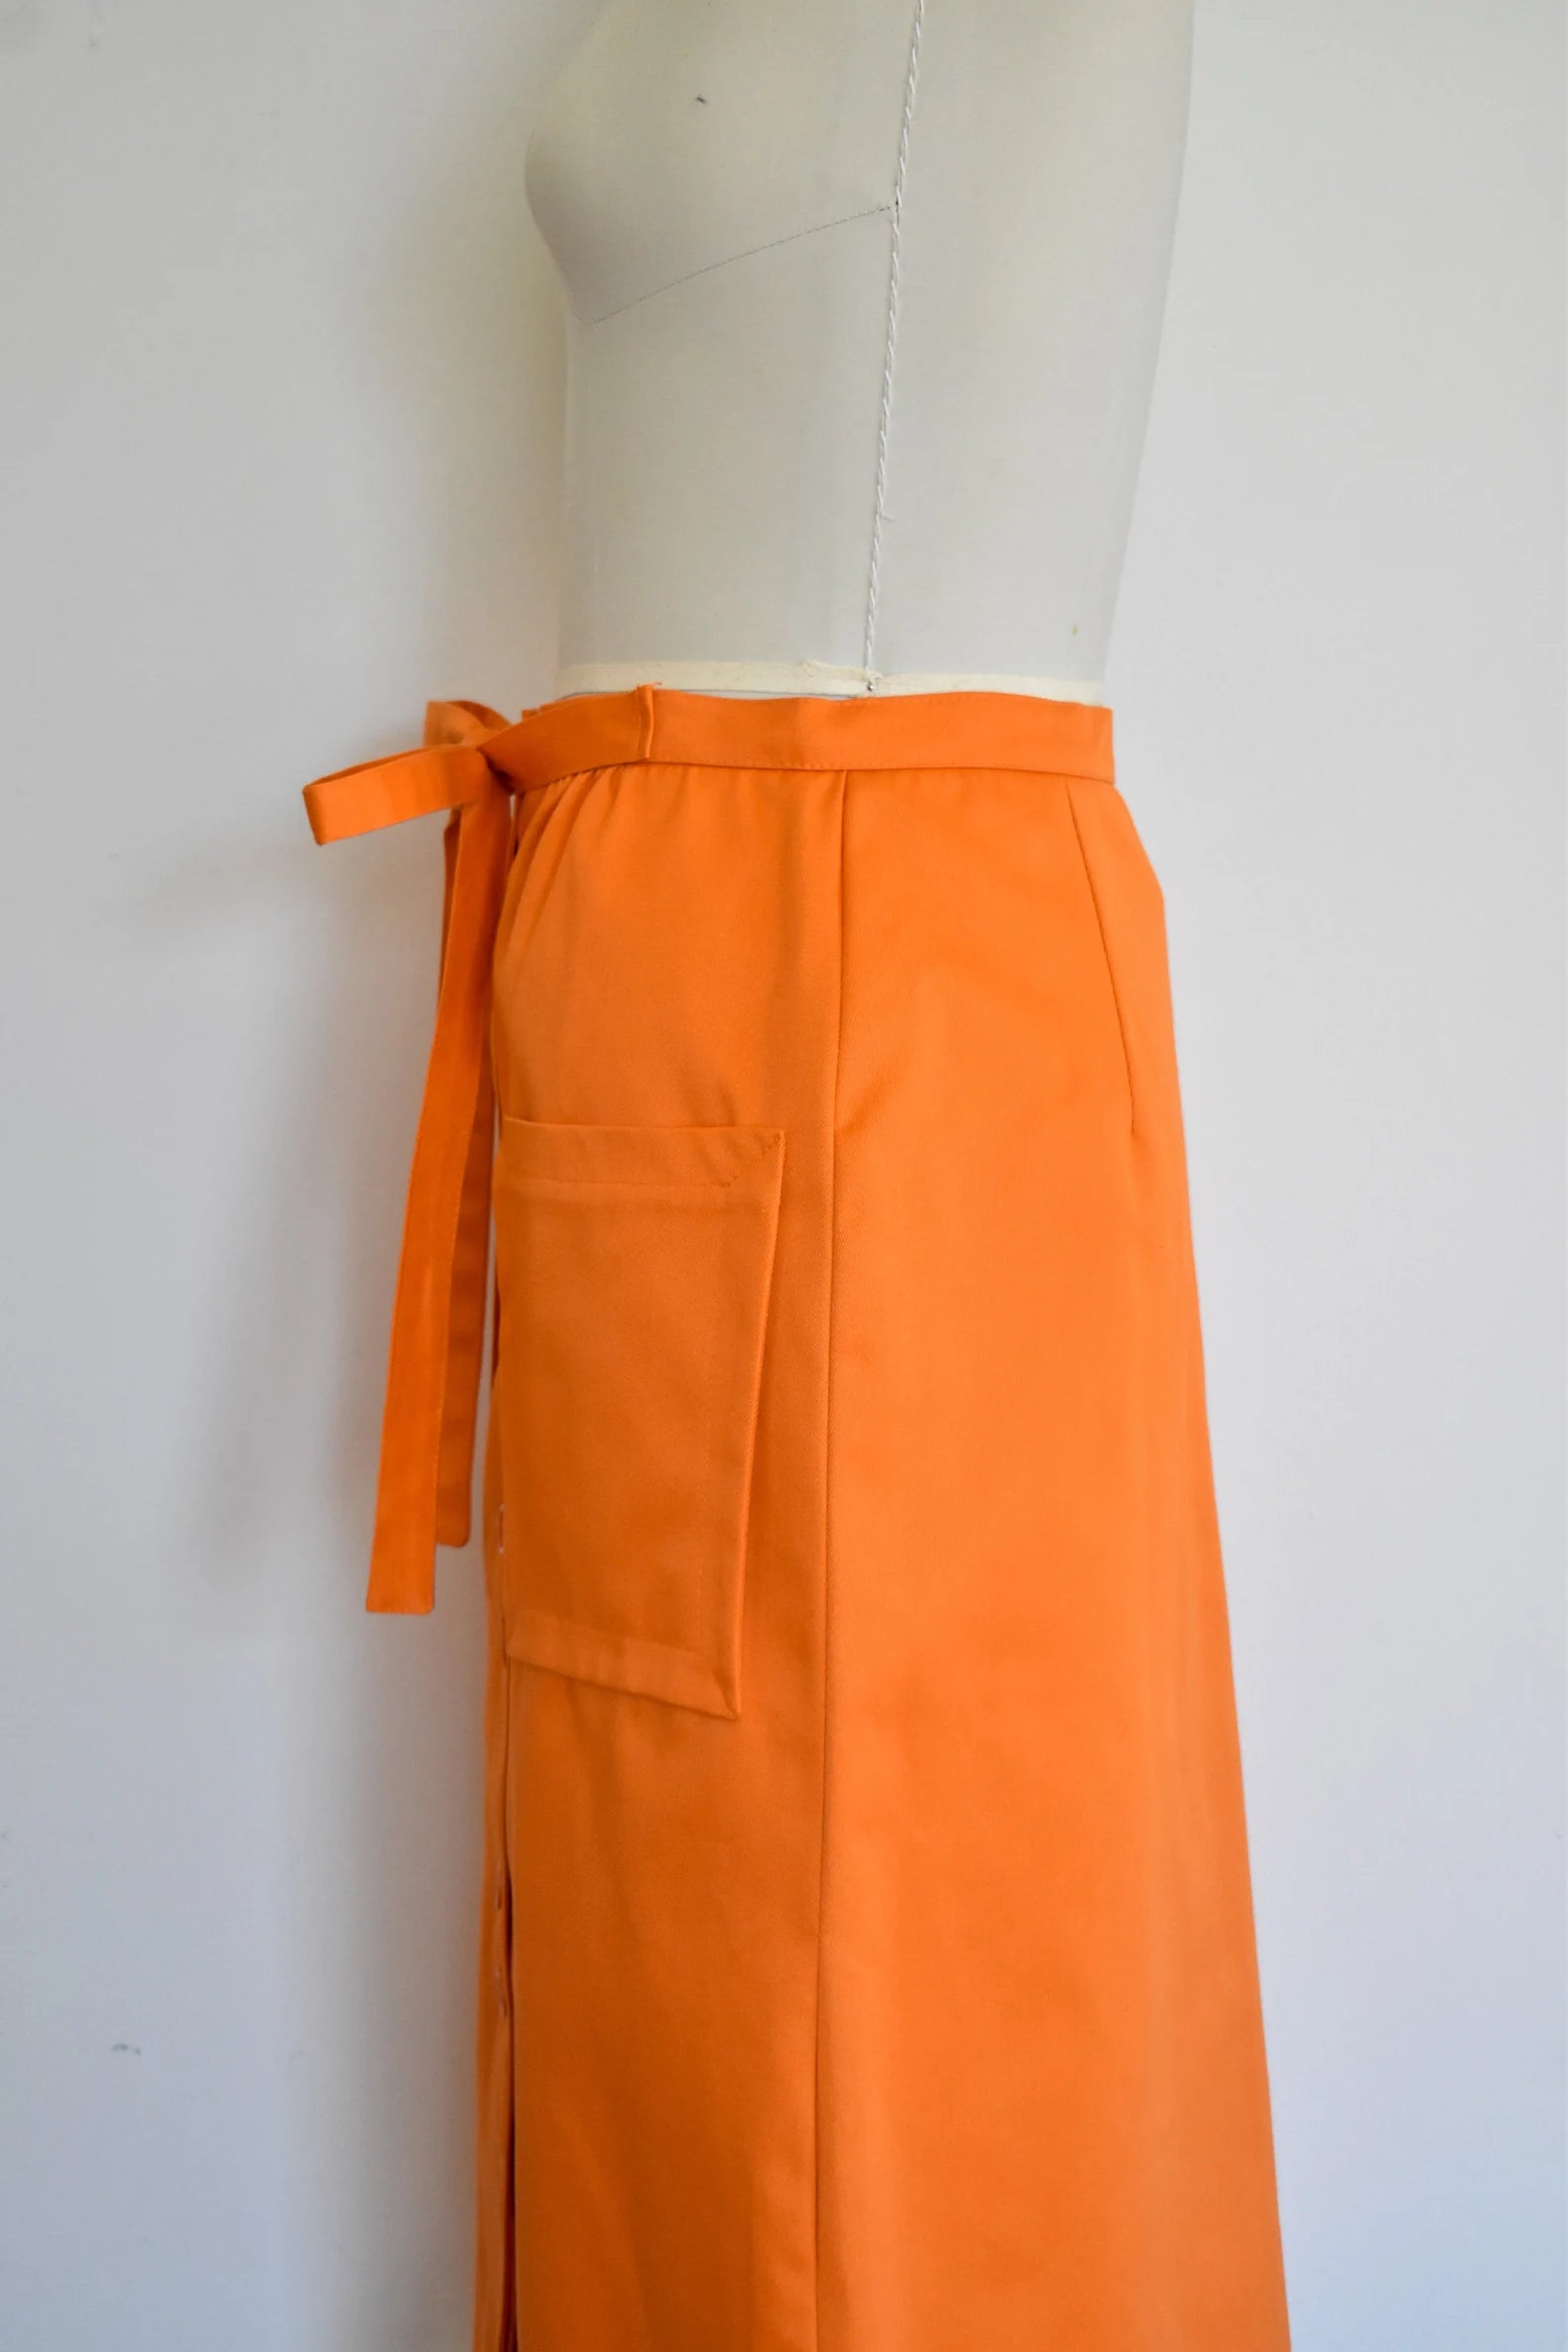 Vintage 1970s/80s Orange Button Front Twill Skirt with Waist Tie, Miss Renfrew by Holt Renfrew, Waist 29"